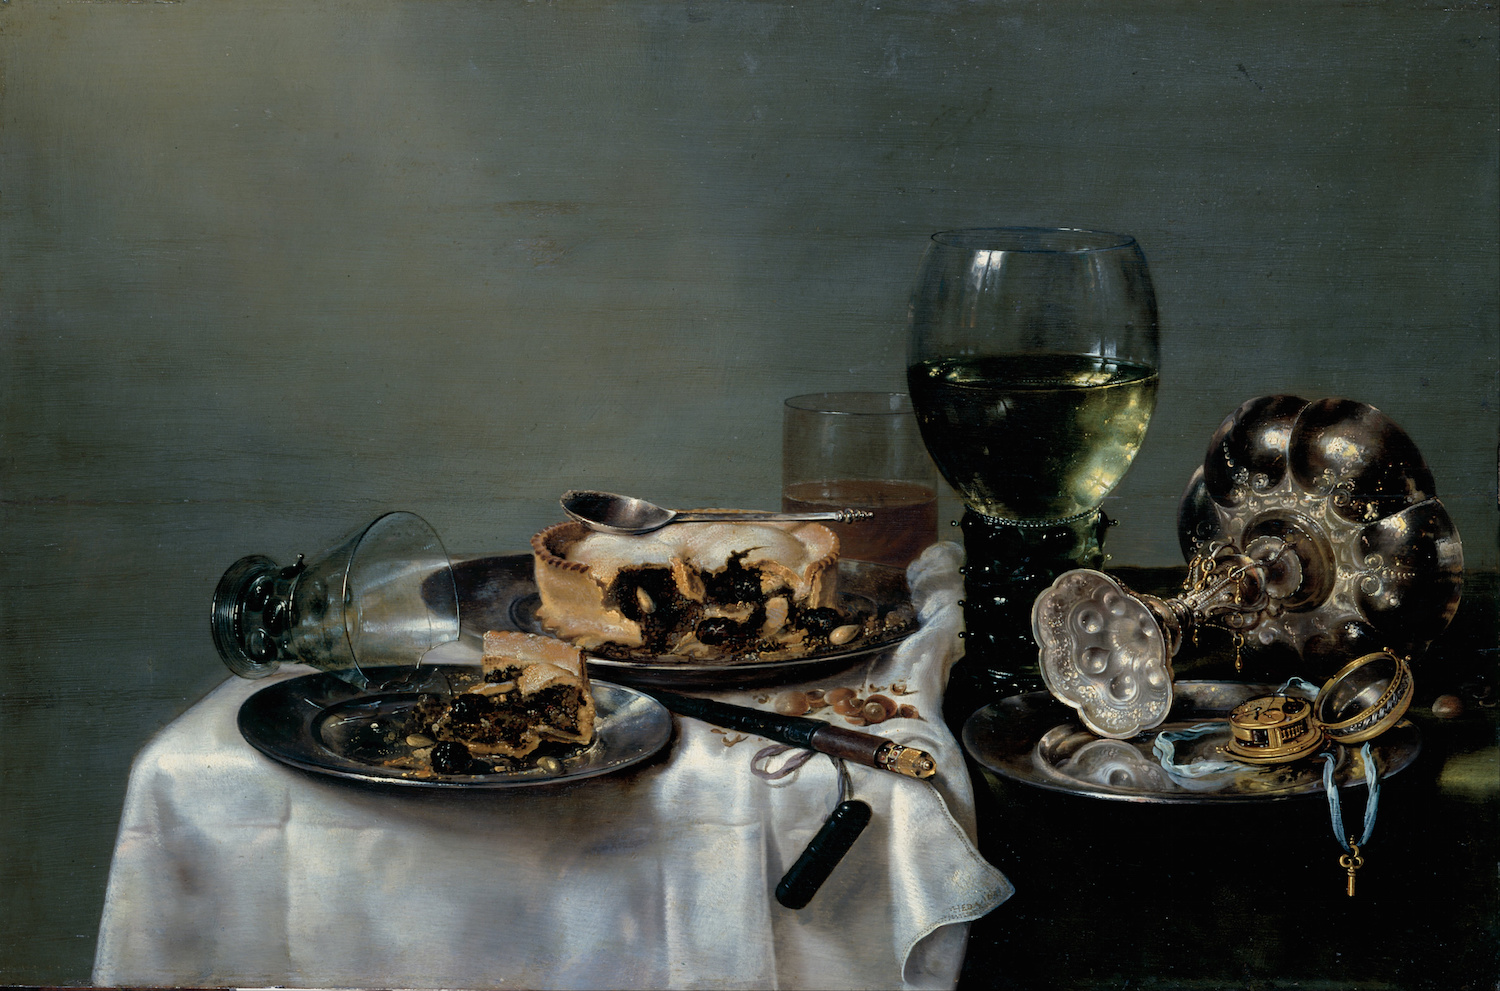 Breakfast Table with Blackberry Pie by Willem Claeszoon Heda - 1631 - 82 x 54 cm Staatliche Kunstsammlungen Dresden